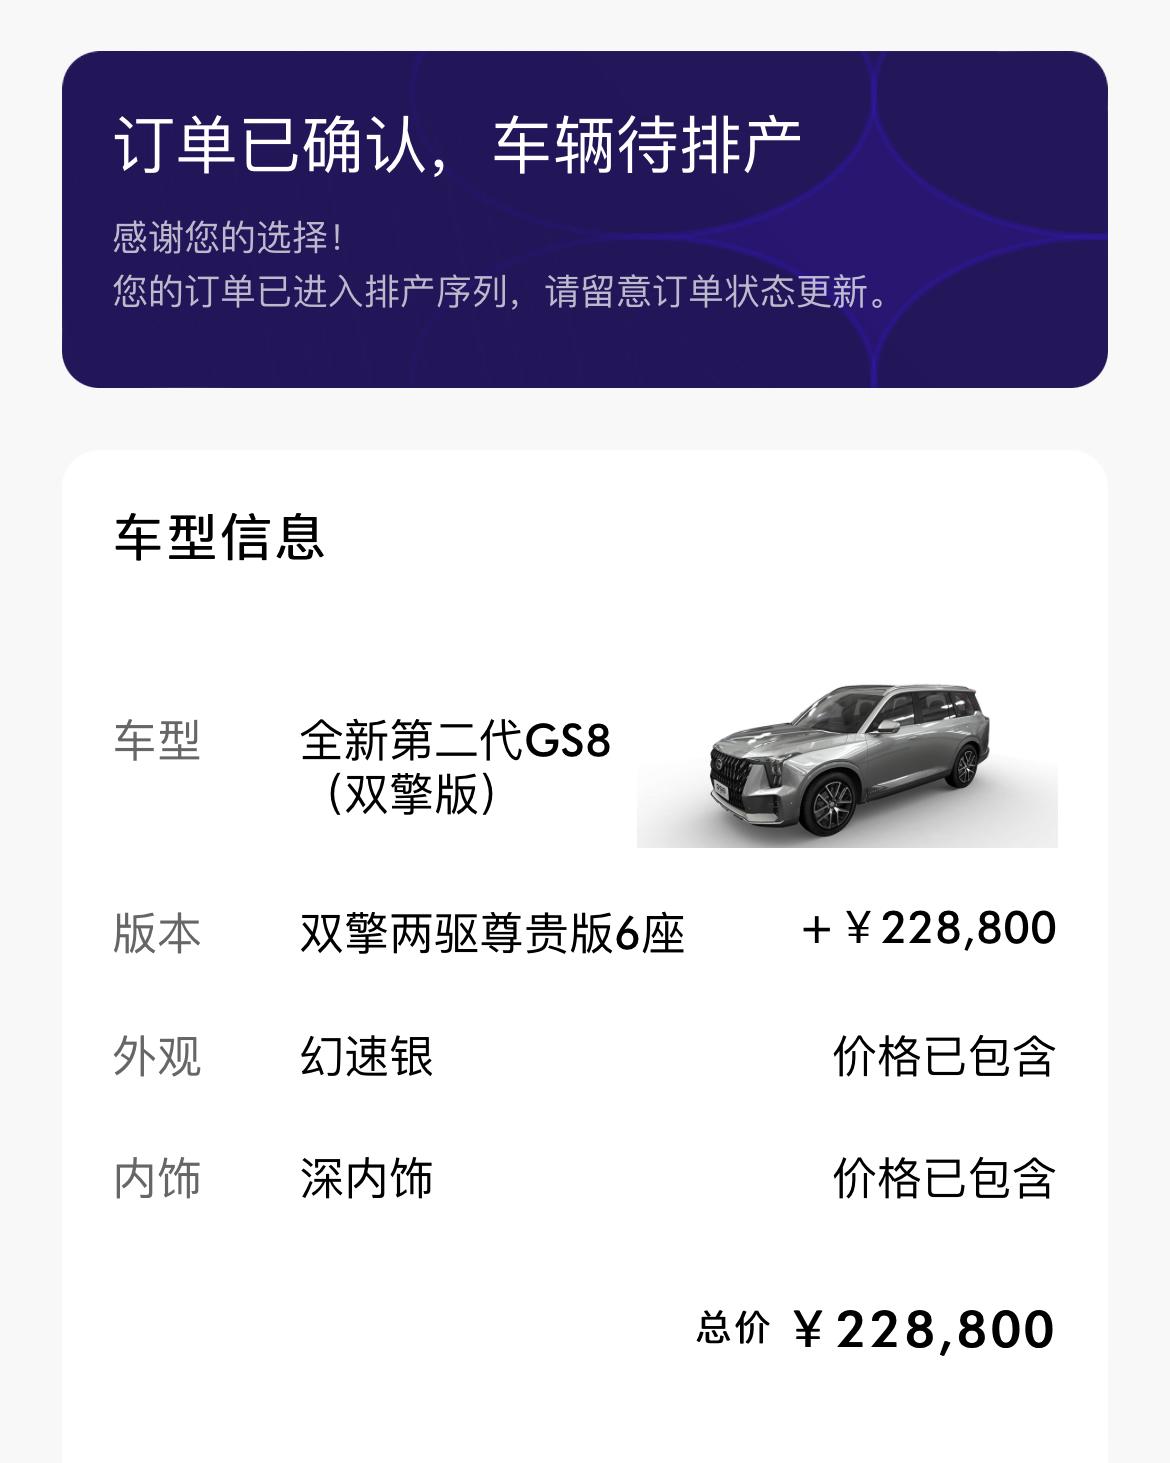 广汽传祺传祺GS8 坐标东莞，请问一般要多久提车，就怕明年提车享受不了购置税减半